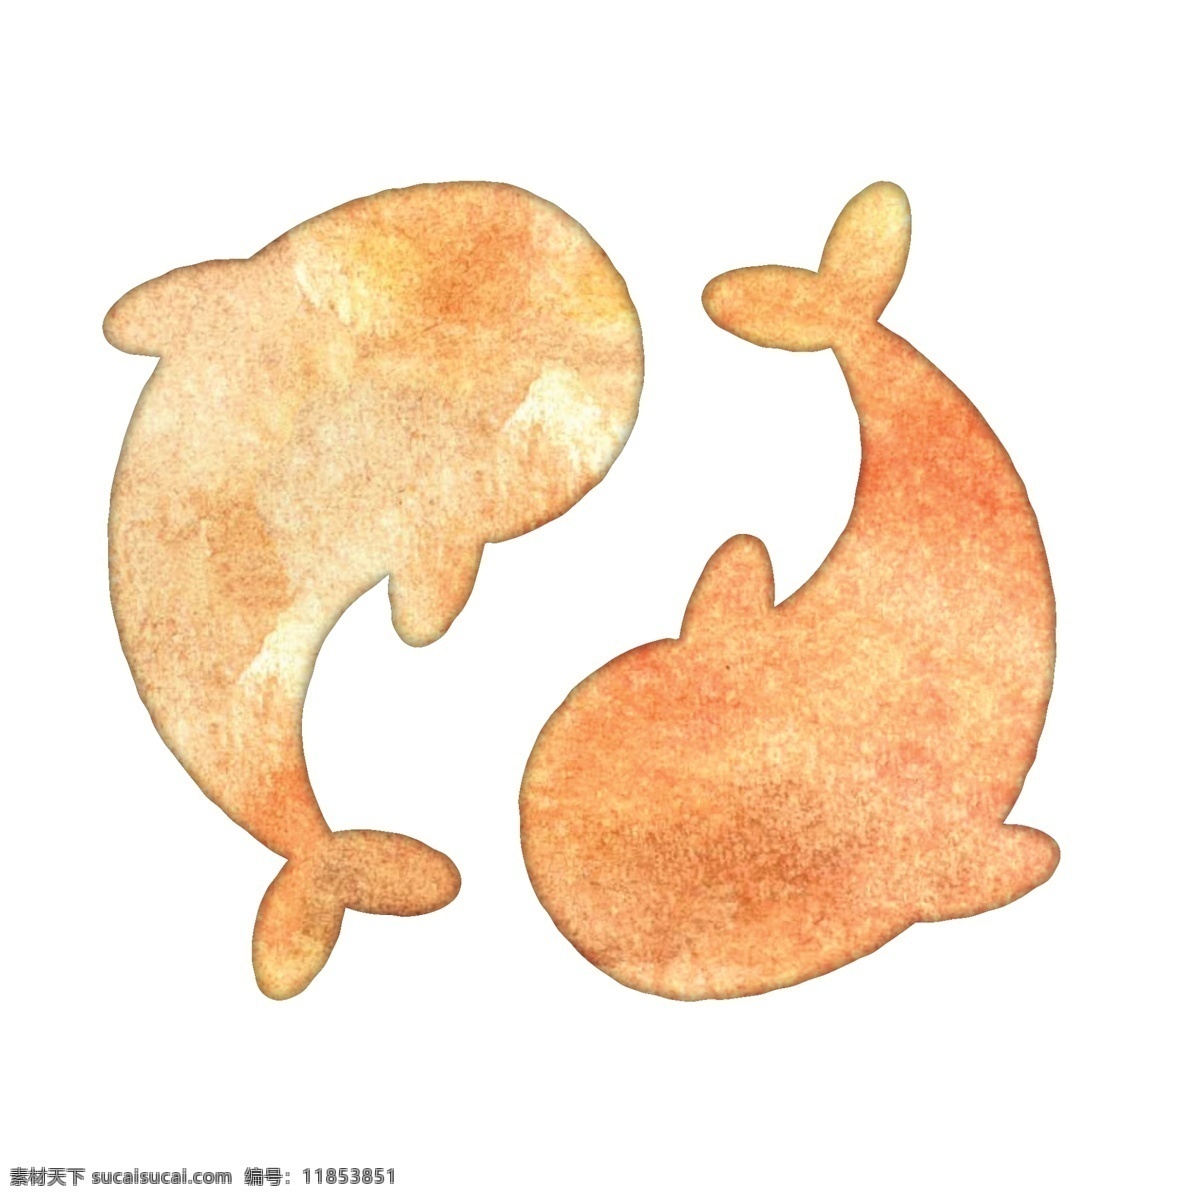 卡通 鱼 图标 免 抠 图 两条鲤鱼 手绘 小 鱼儿 卡通小鱼图标 免抠图 橙色